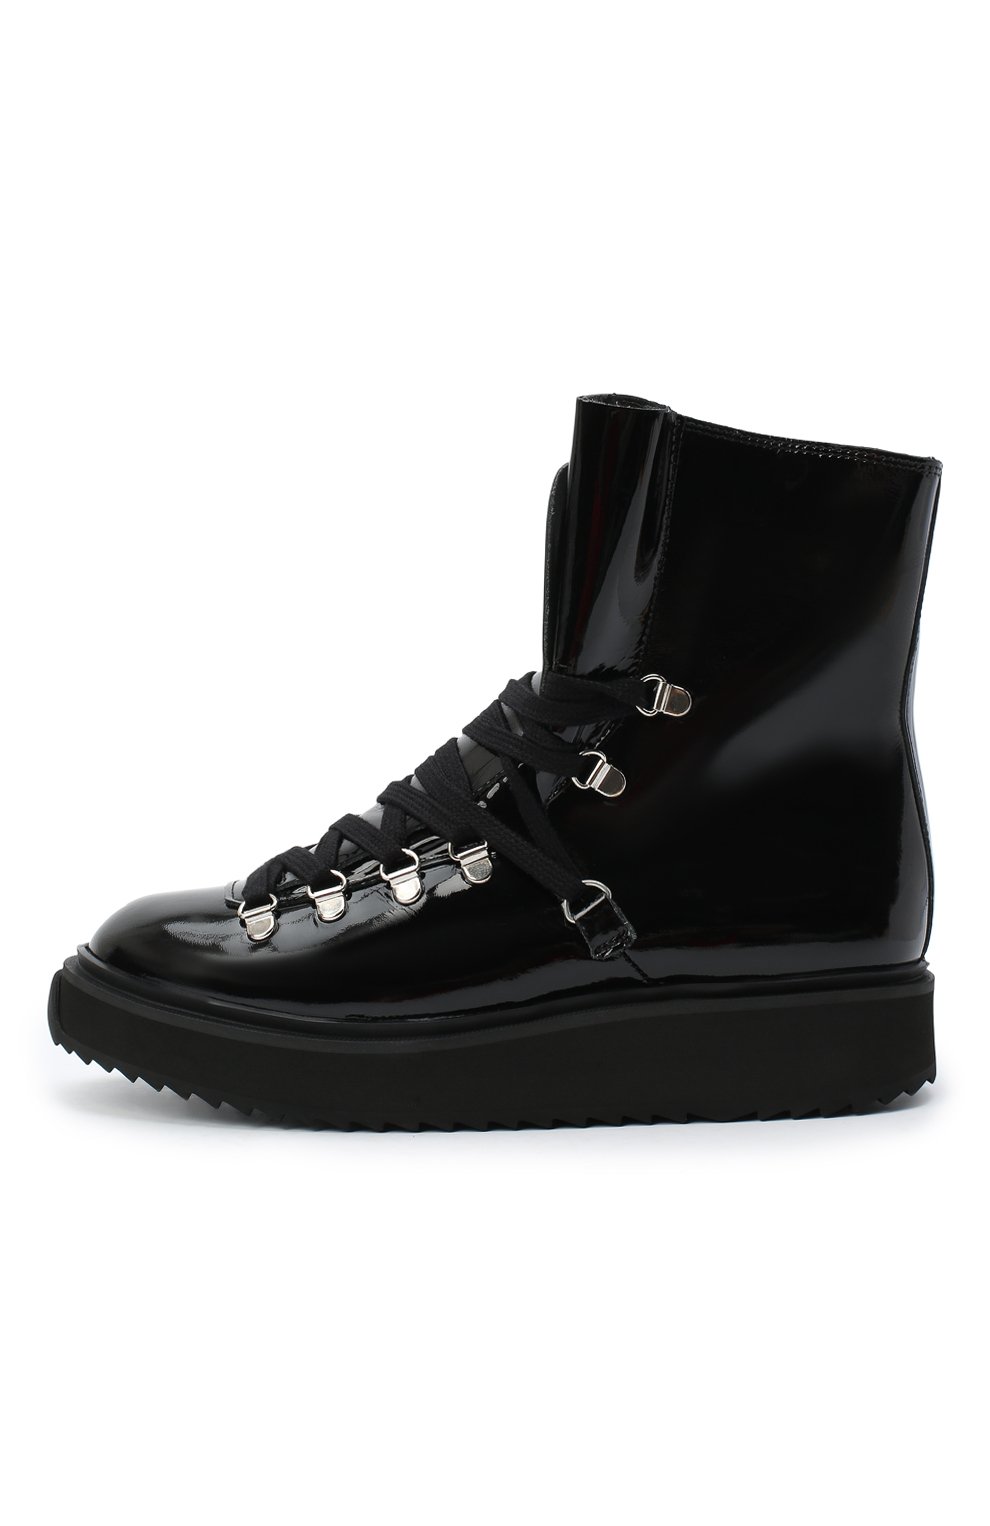 Кожаные ботинки Alaska Kenzo FA62BT301L64, цвет чёрный, размер 36 - фото 3